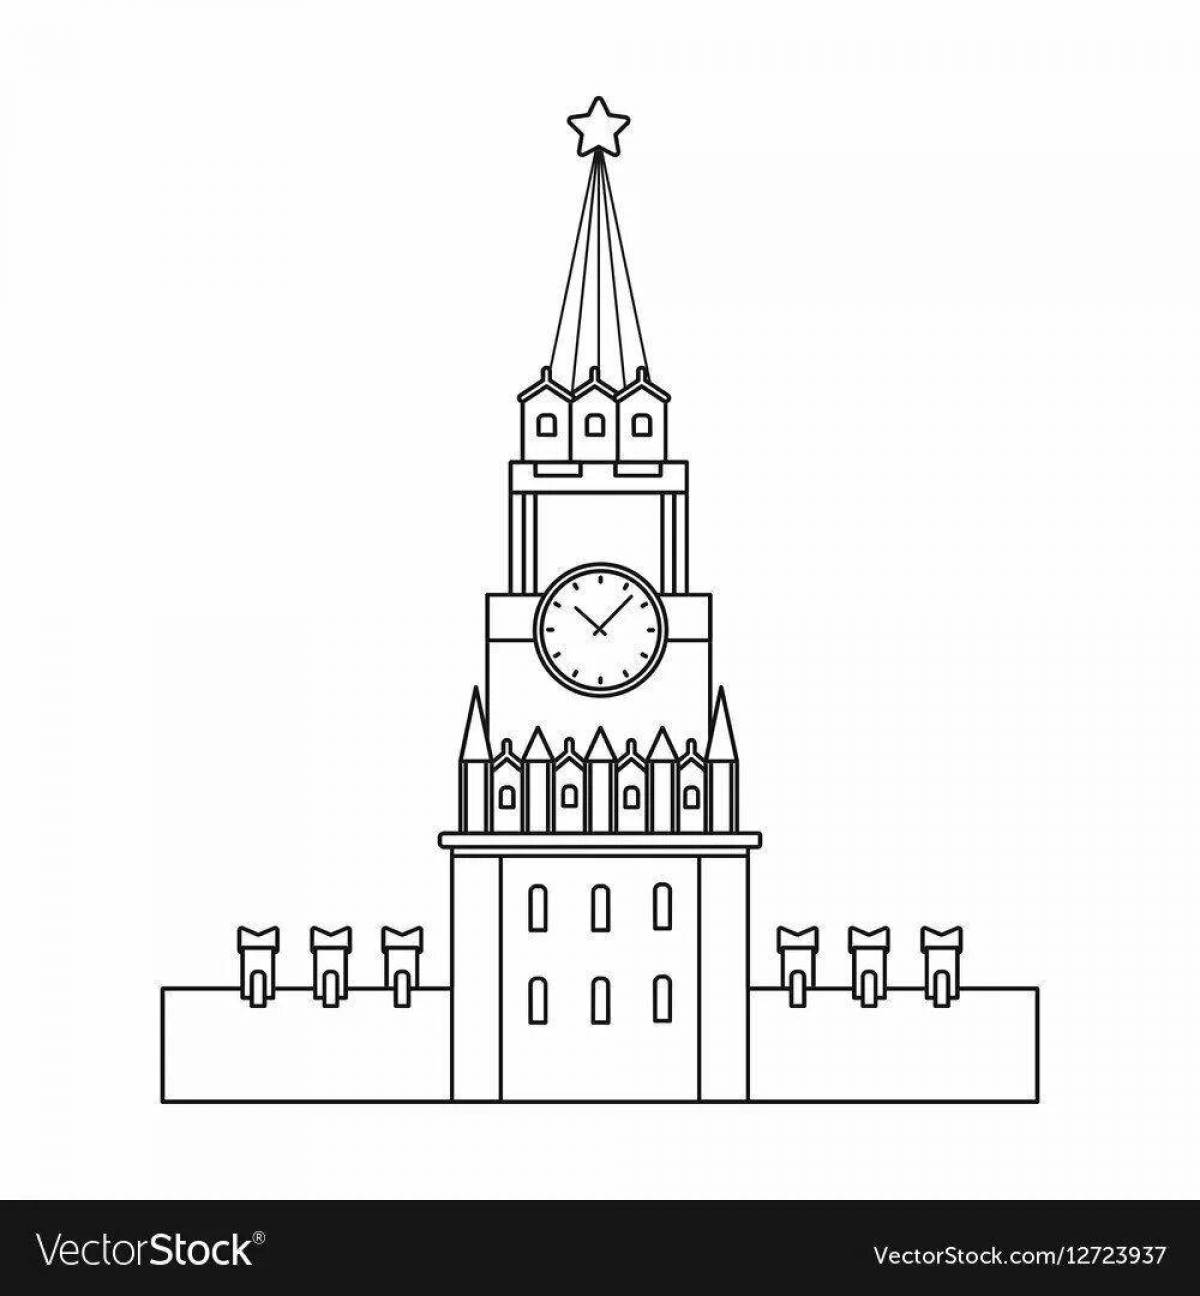 Playful Kremlin coloring book for kids